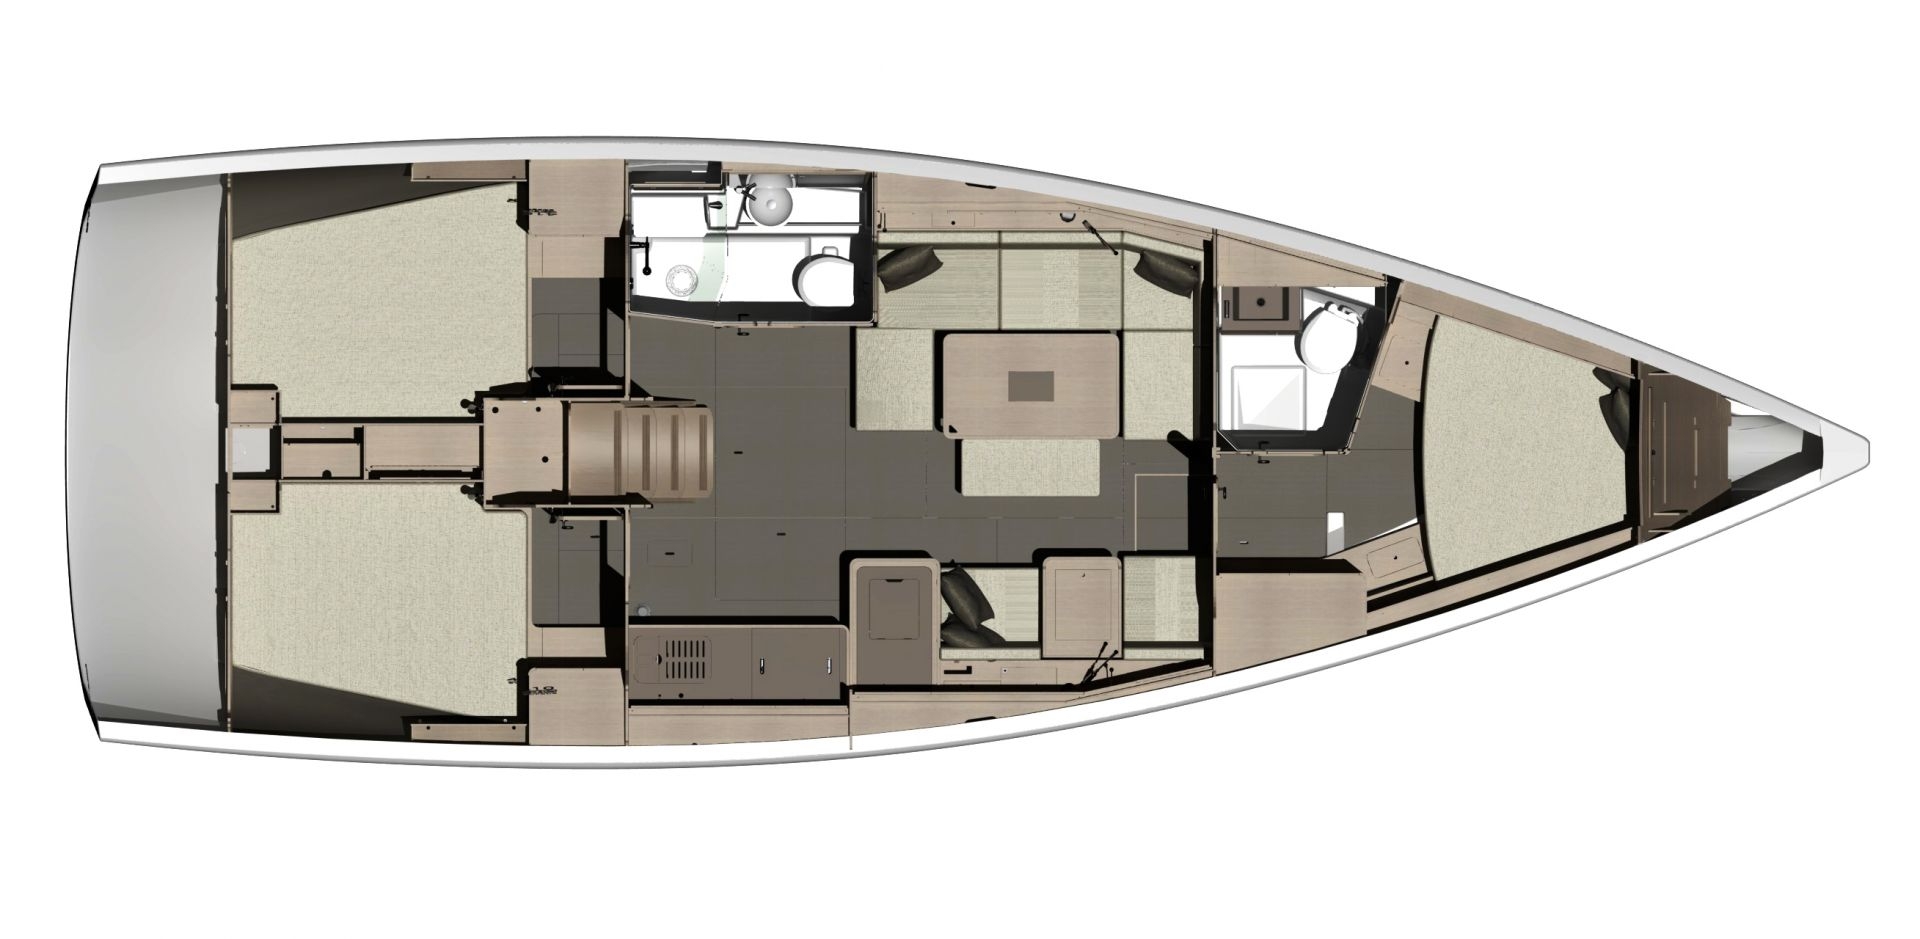 Floor plan image for yacht Dufour 412 - Rose de Mer